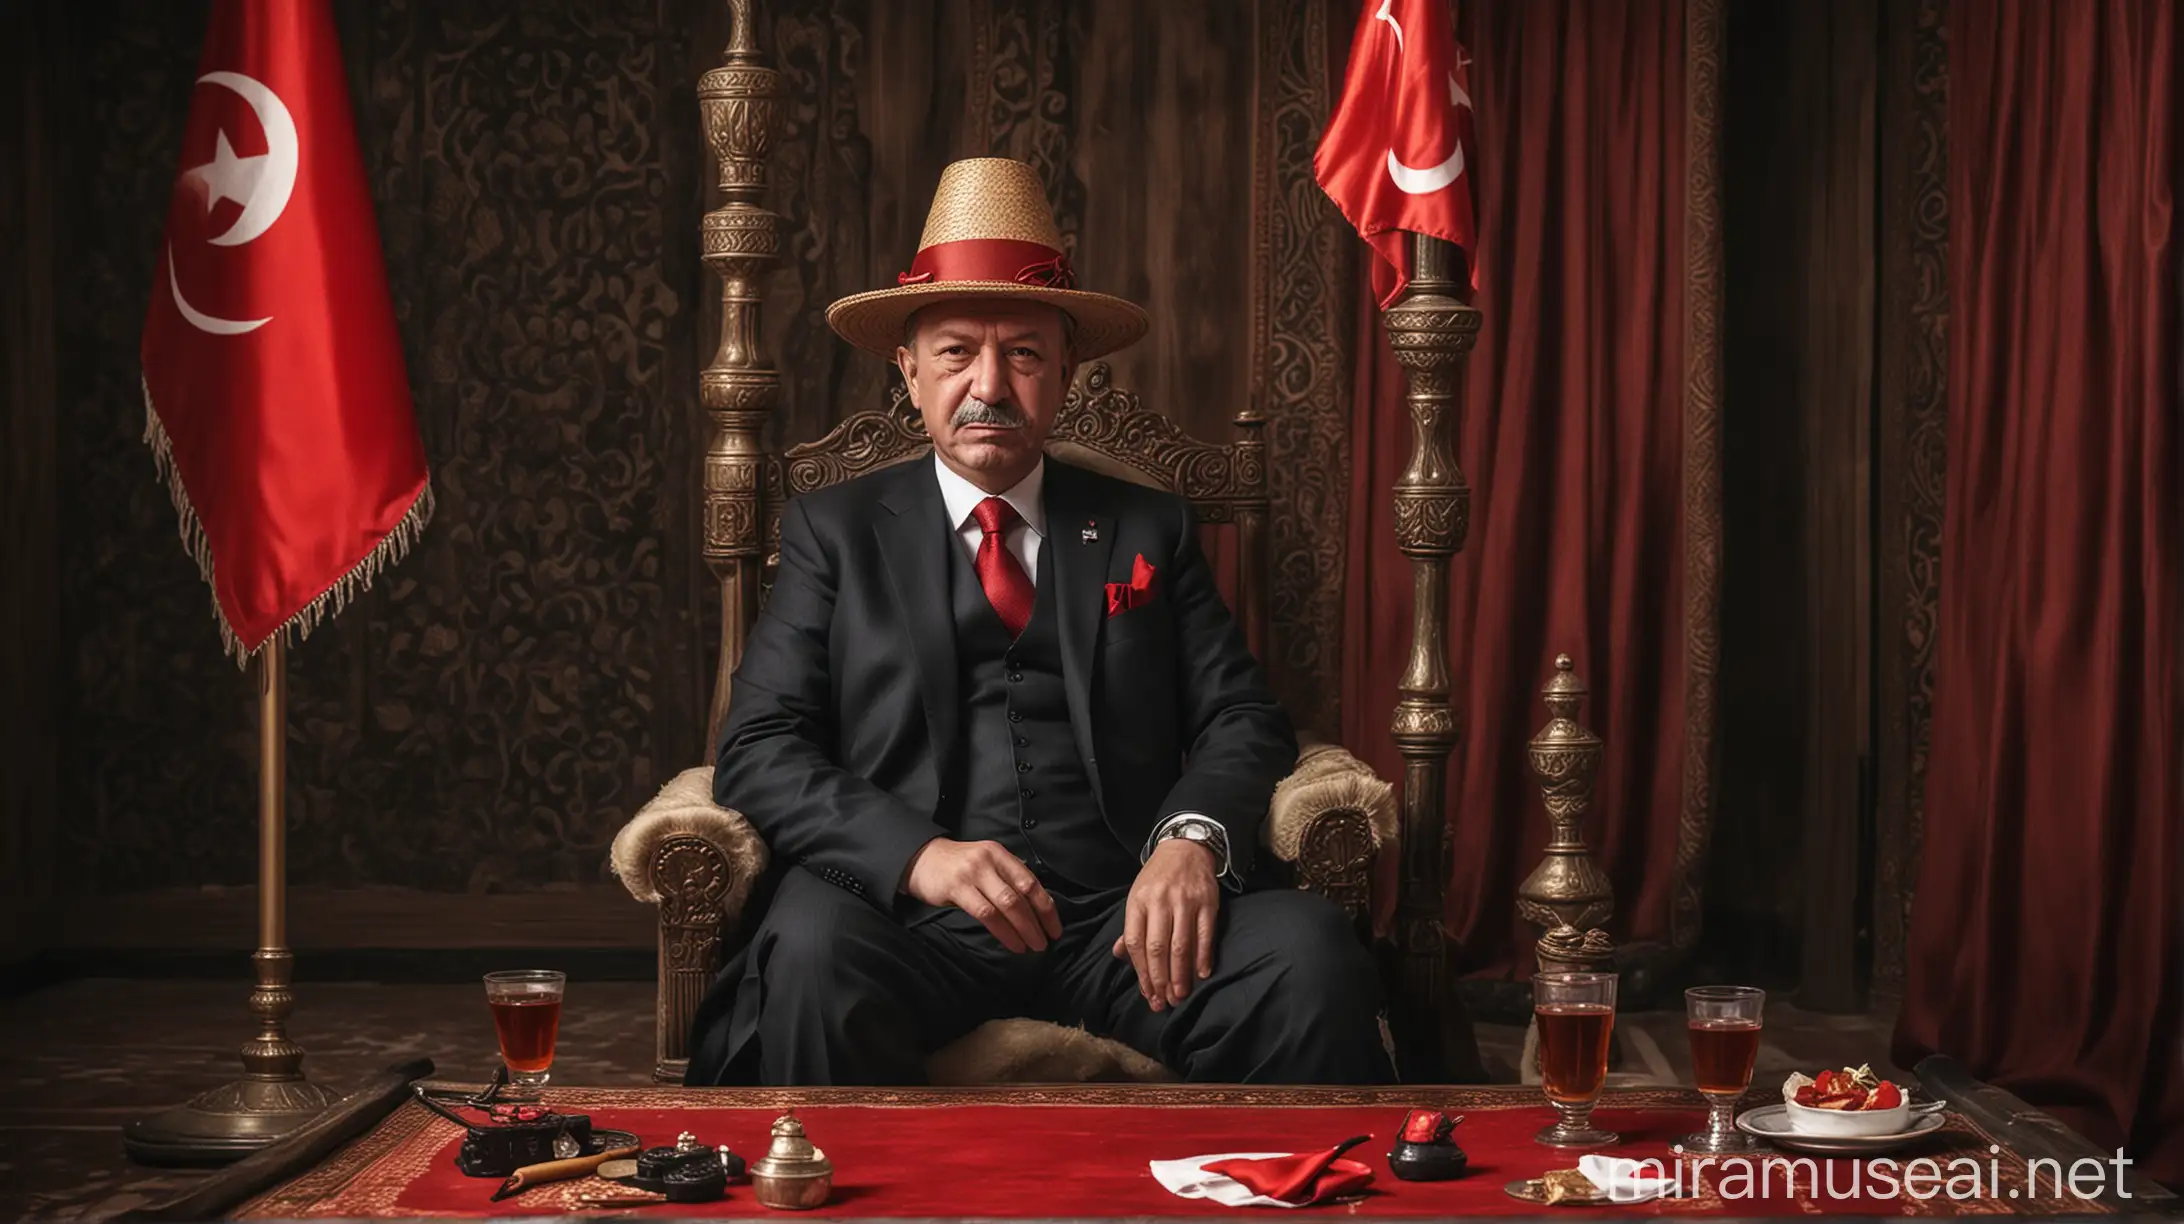 Turkish President Enjoying Shisha with Humorous Flair